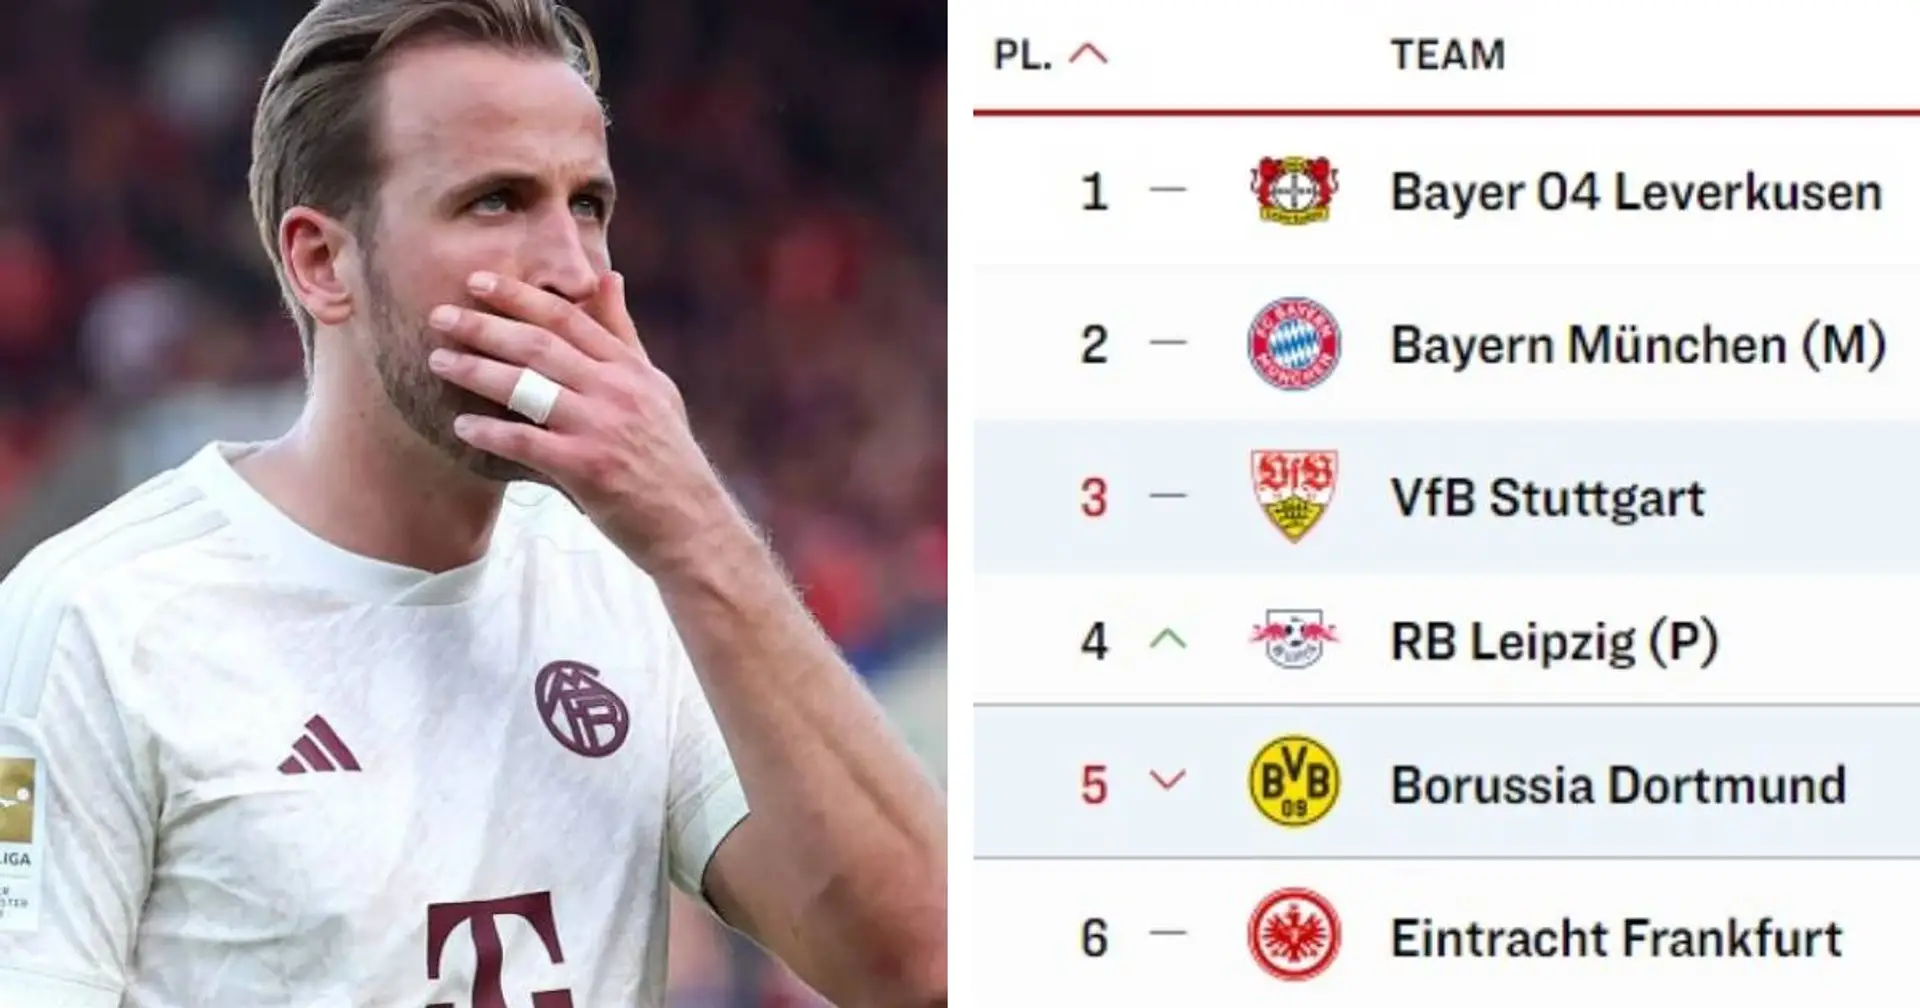 Sogar Platz 2 ist in Gefahr: Stuttgart hat nun genauso viele Punkte wie Bayern